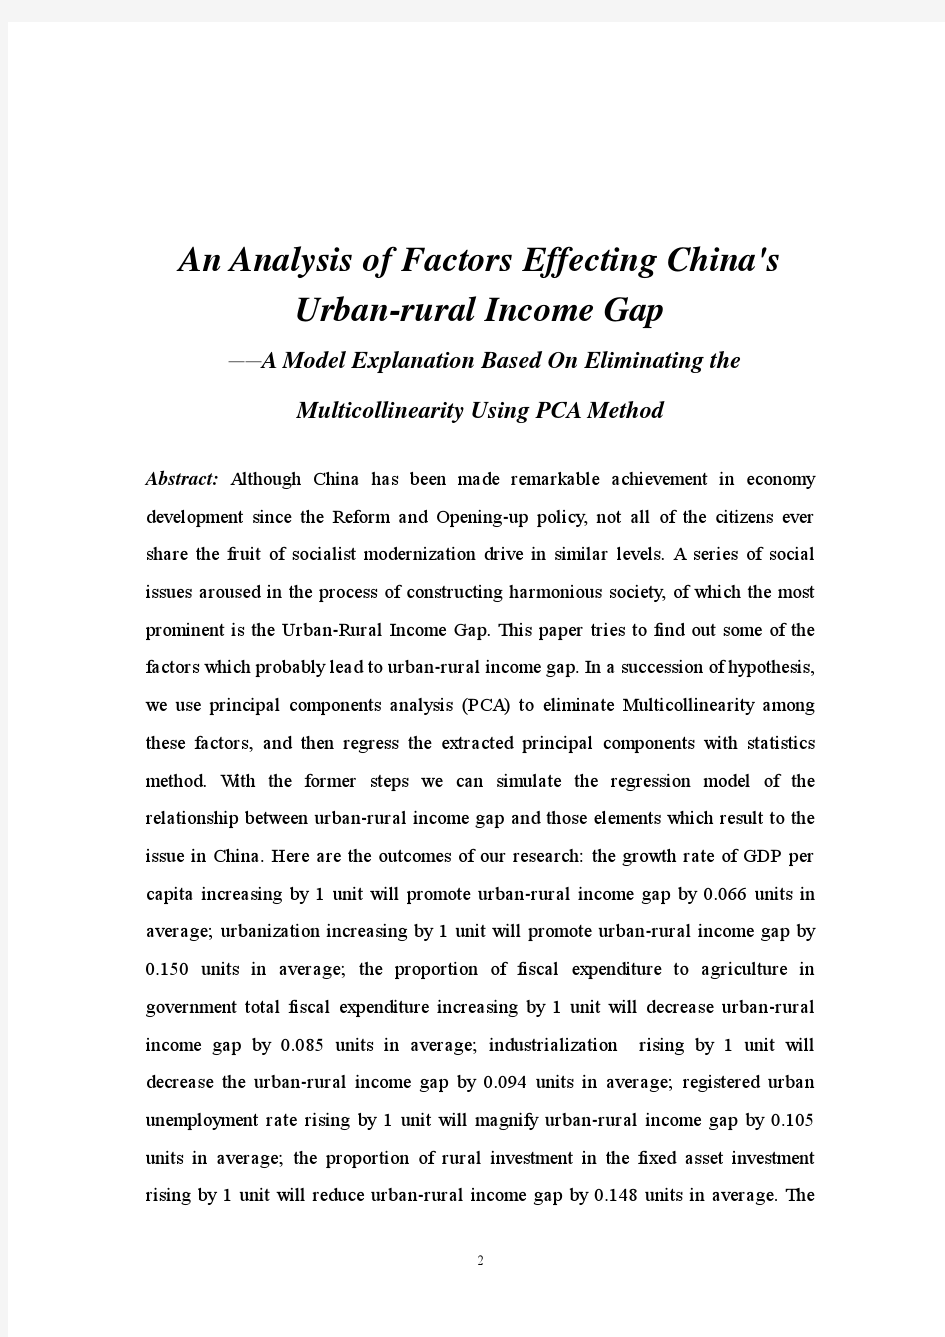 中国城乡居民收入差距影响因素分析——基于主成分析法消除多重共线性的模型解释